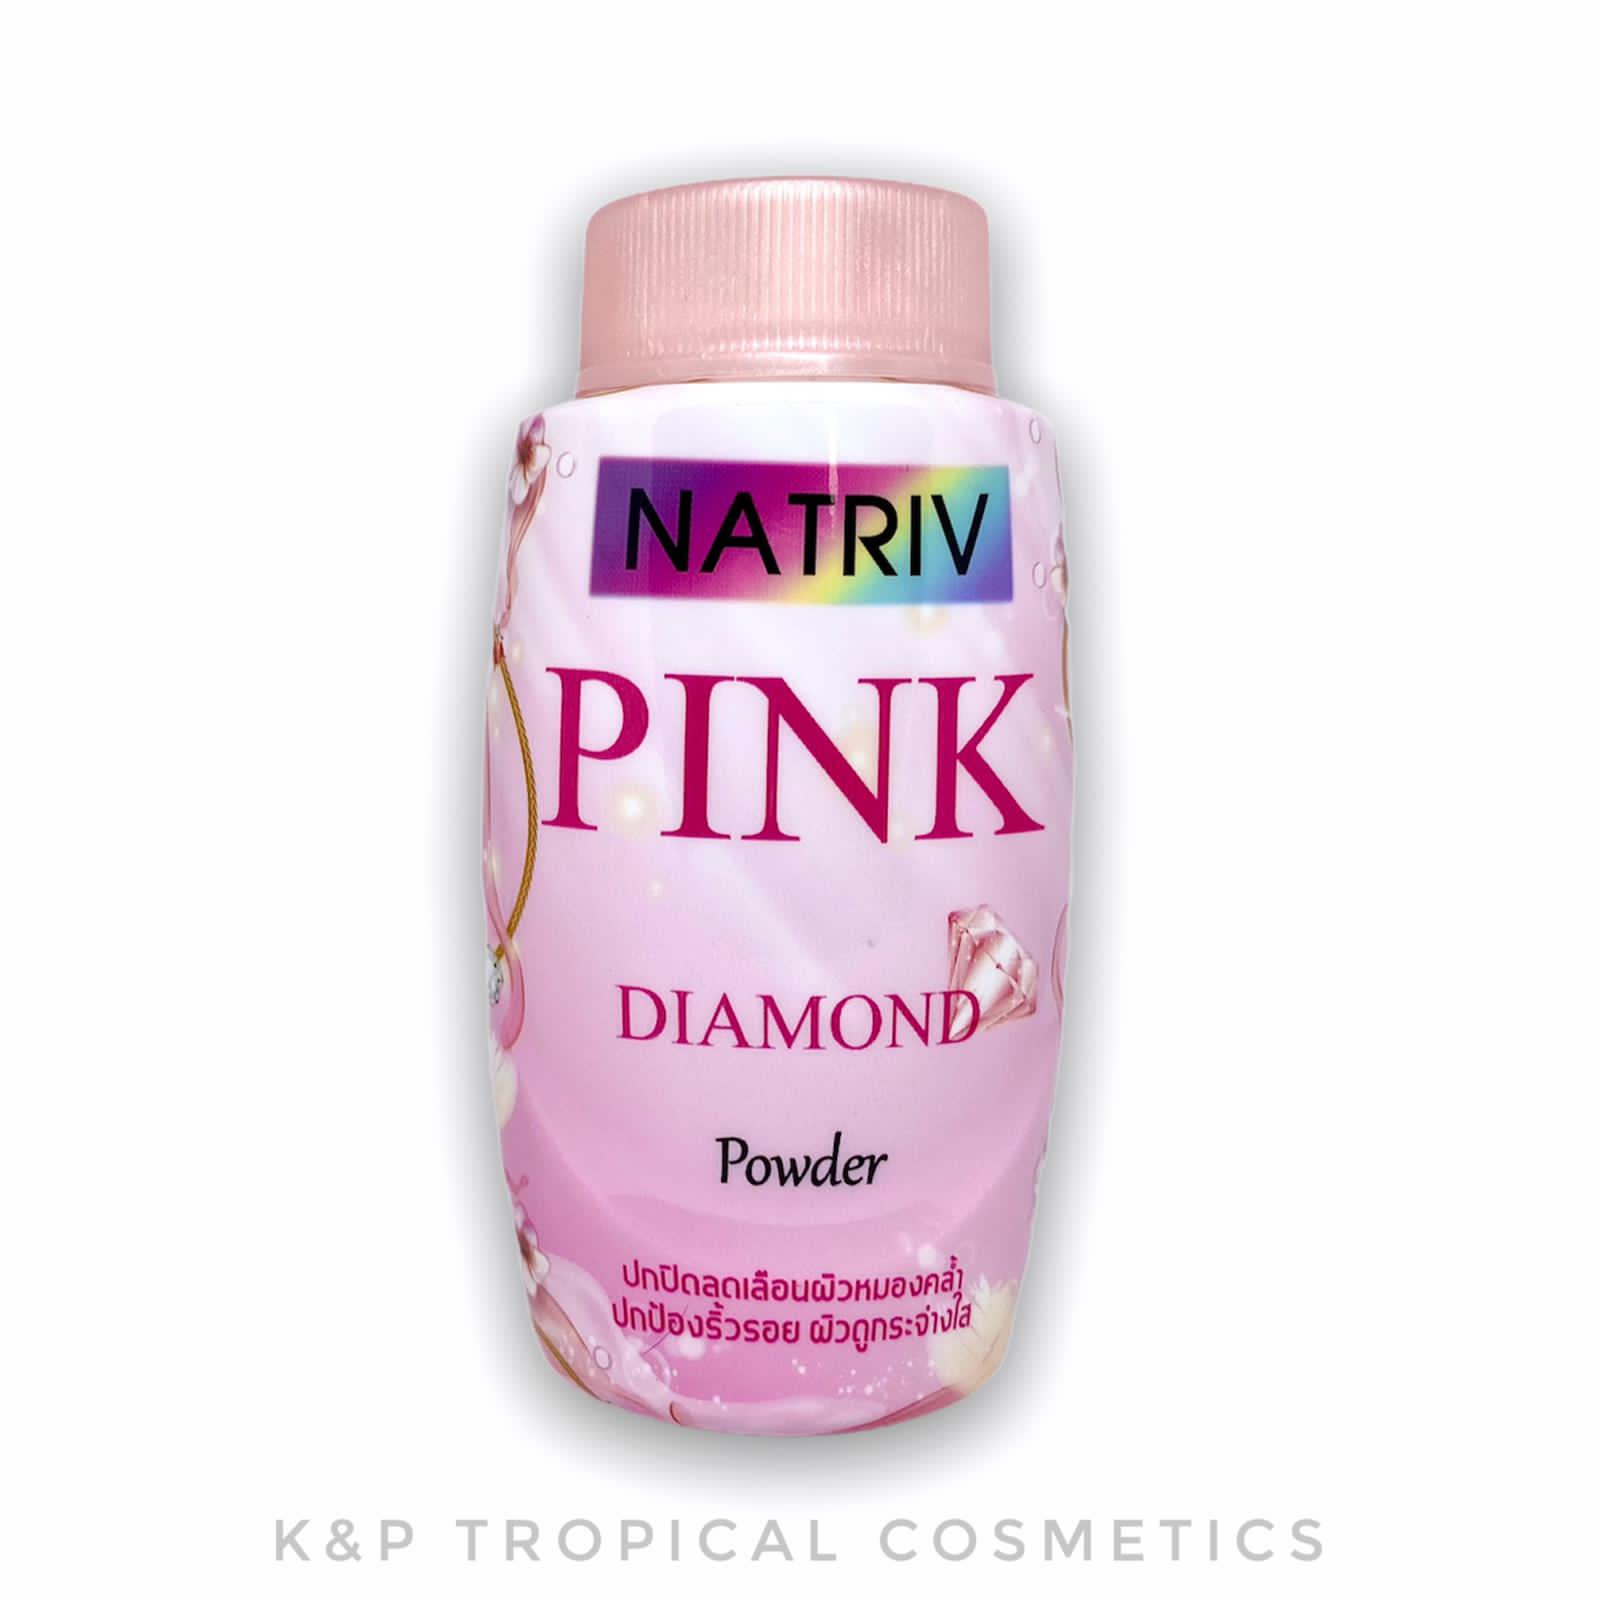 Natriv Pink Diamond Powder 25 g., Рассыпчатая пудра для лица с экстрактом толокнянки и турмалином для сияния кожи 25 гр.